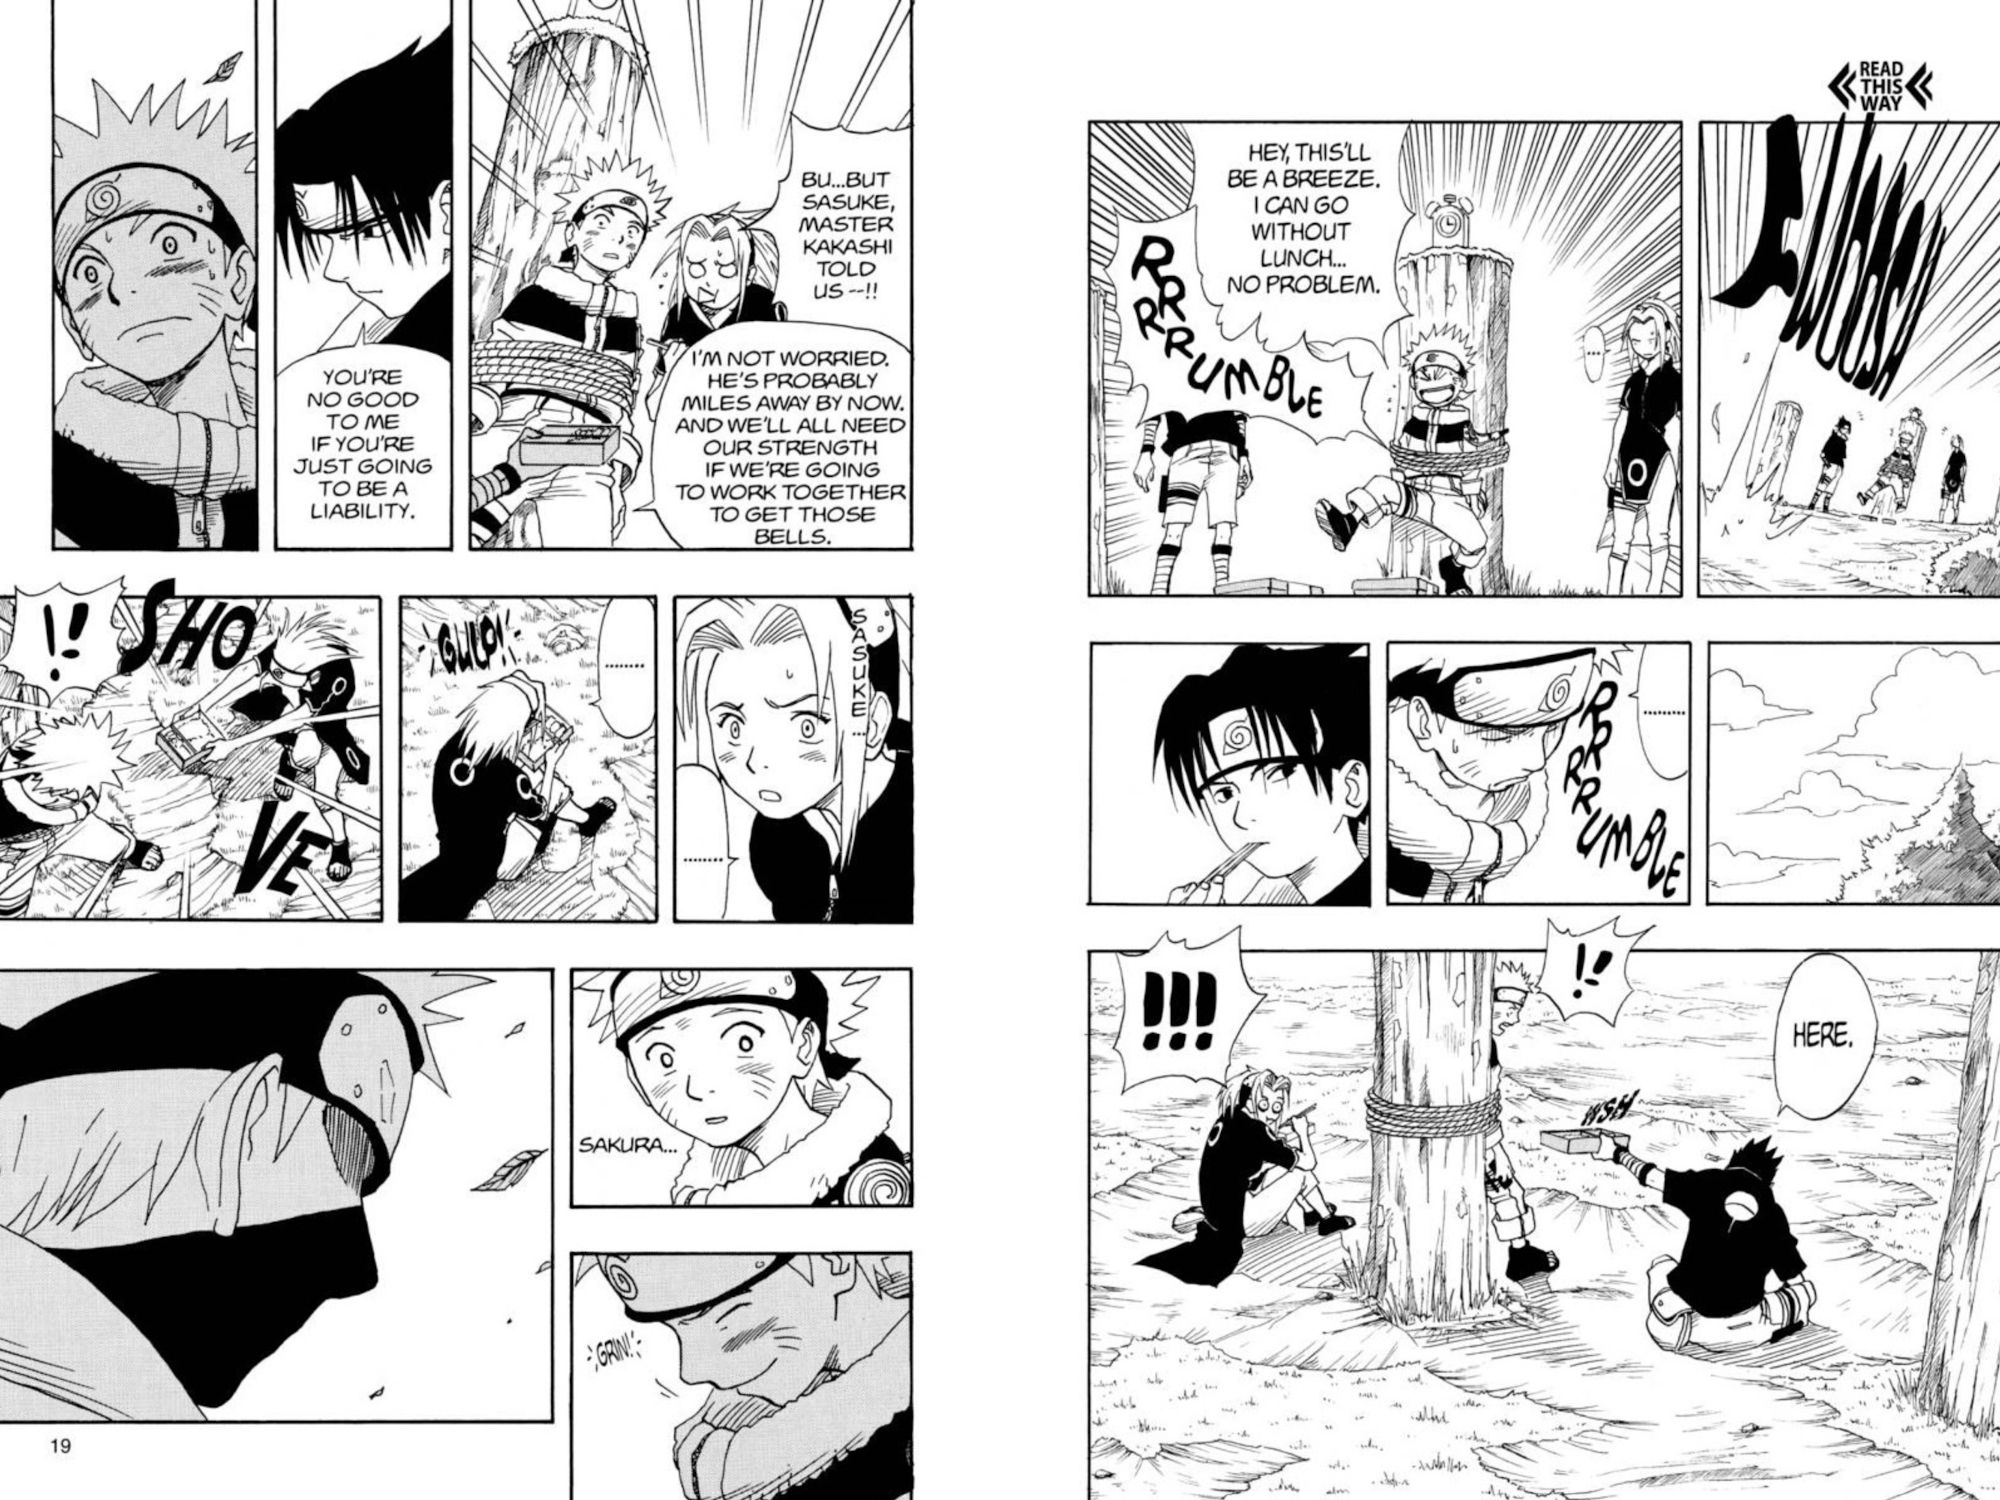 Panel dari manga Naruto bab 8 menunjukkan Naruto diikat setelah mencoba mencuri makan siang rekan satu timnya, lalu Sasuke mengkhianati aturan Kakashi untuk memberi makan Naruto.  Sakura kemudian melakukan hal yang sama.